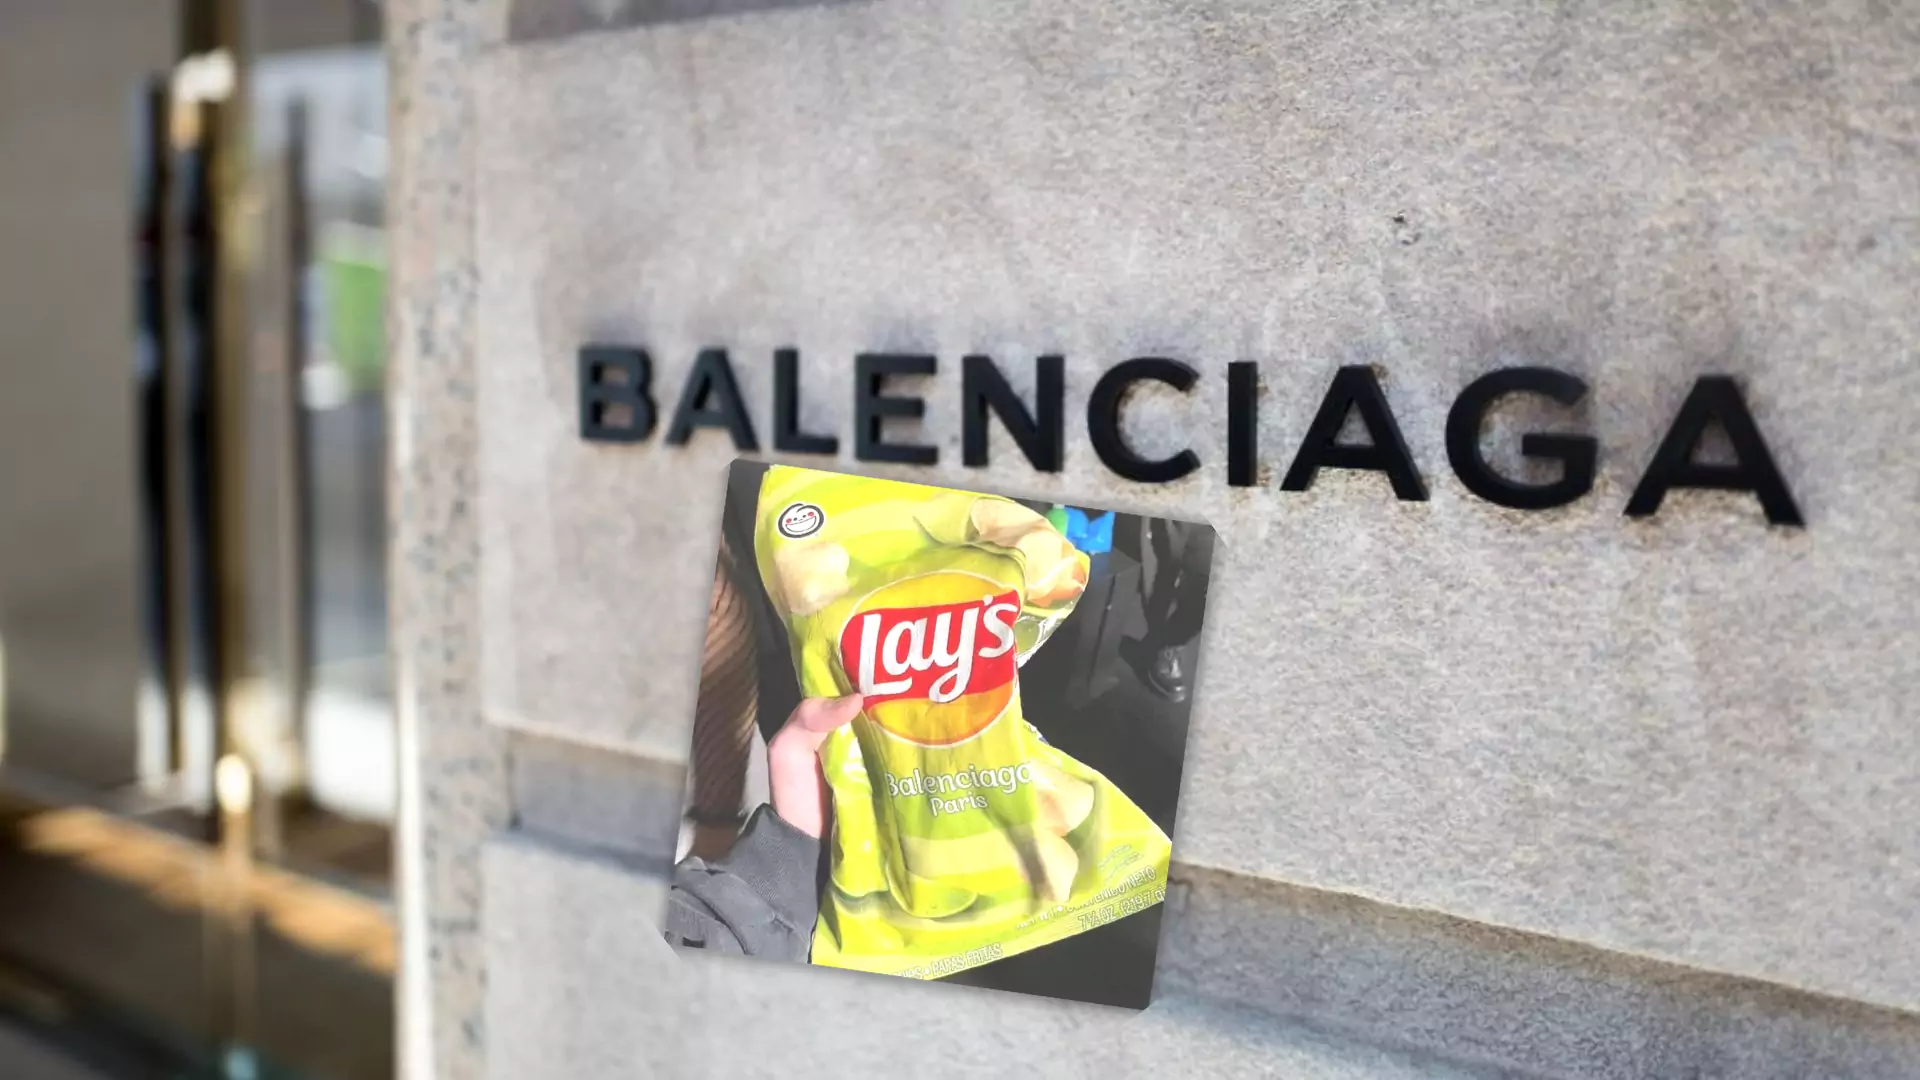 Balenciaga stworzyła torebkę inspirowaną chipsami Lay's